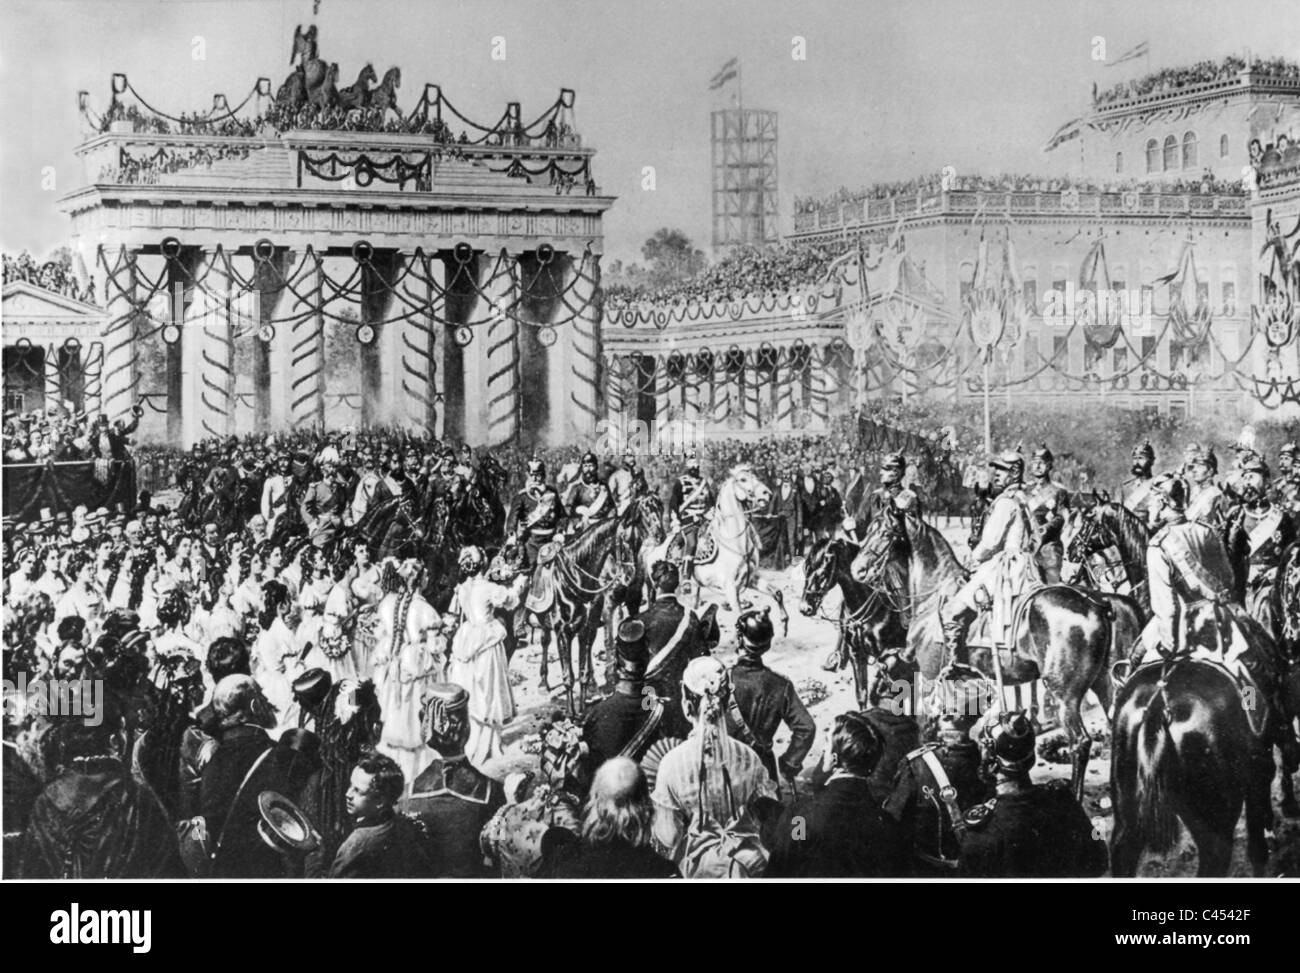 La revue de la victoire à Berlin après la guerre franco-prussienne de 1871 Banque D'Images